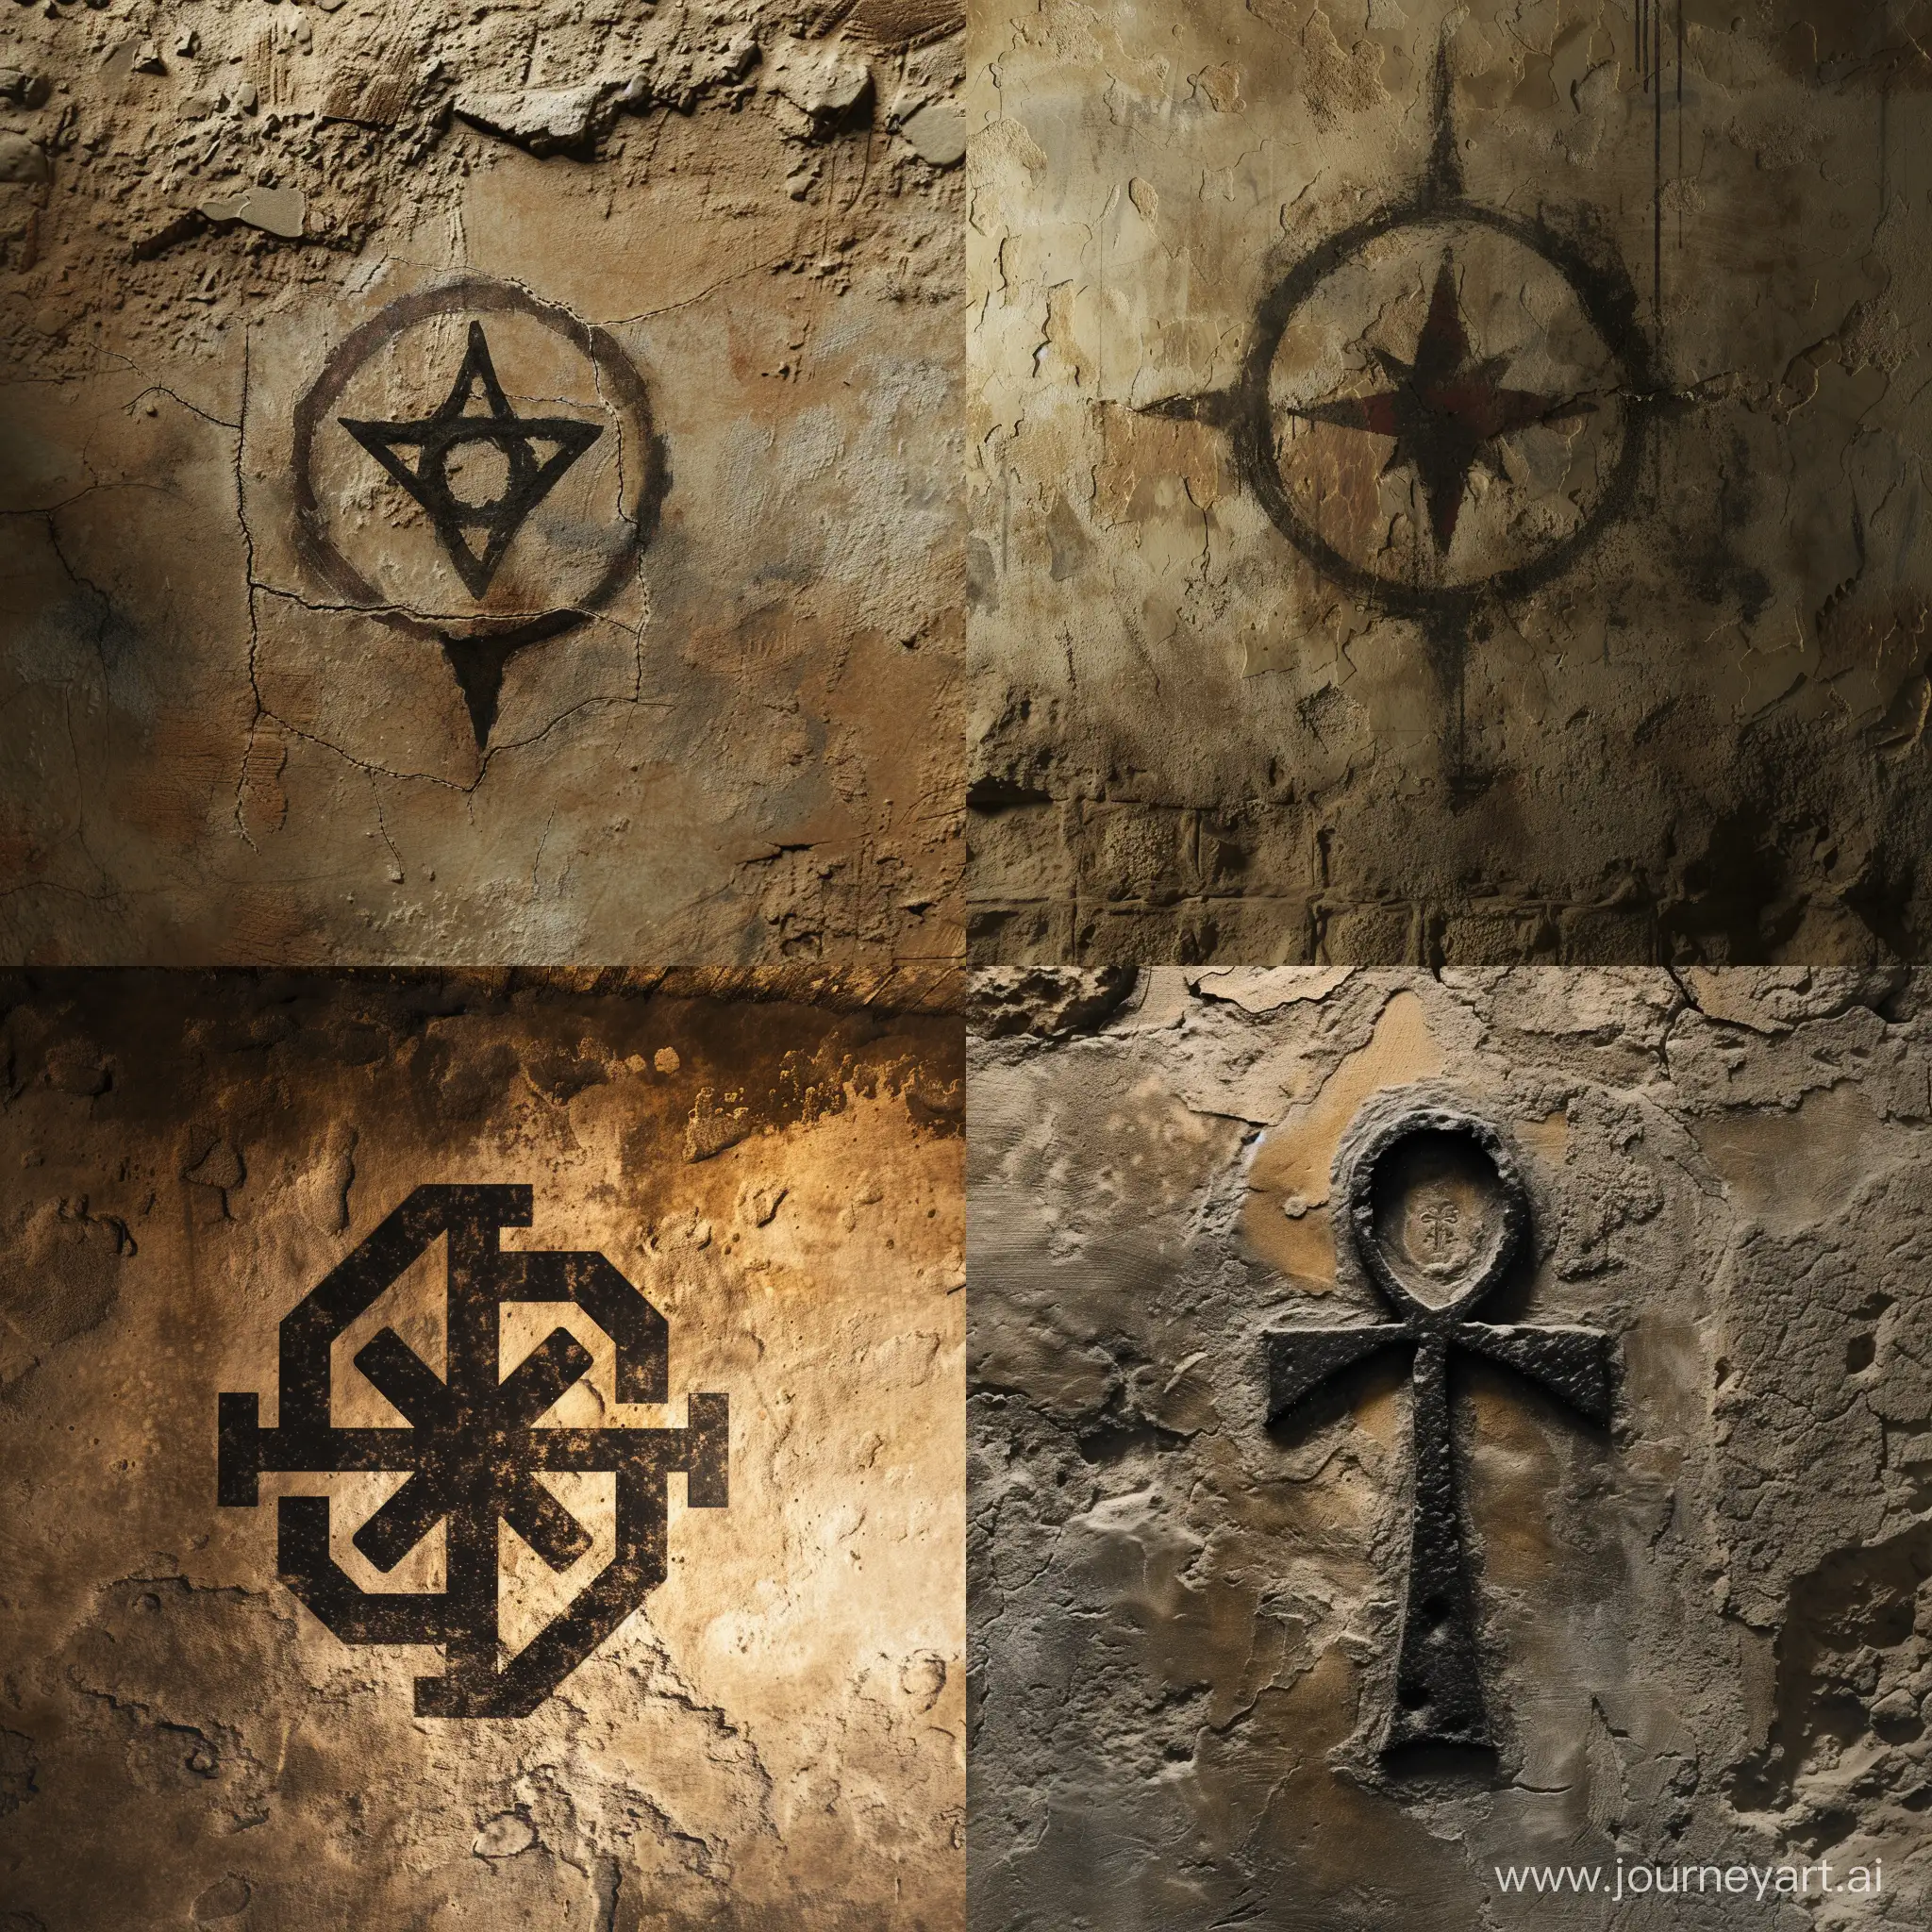 загадочный  символ непонятной формы на стене принадлежит древнему культу